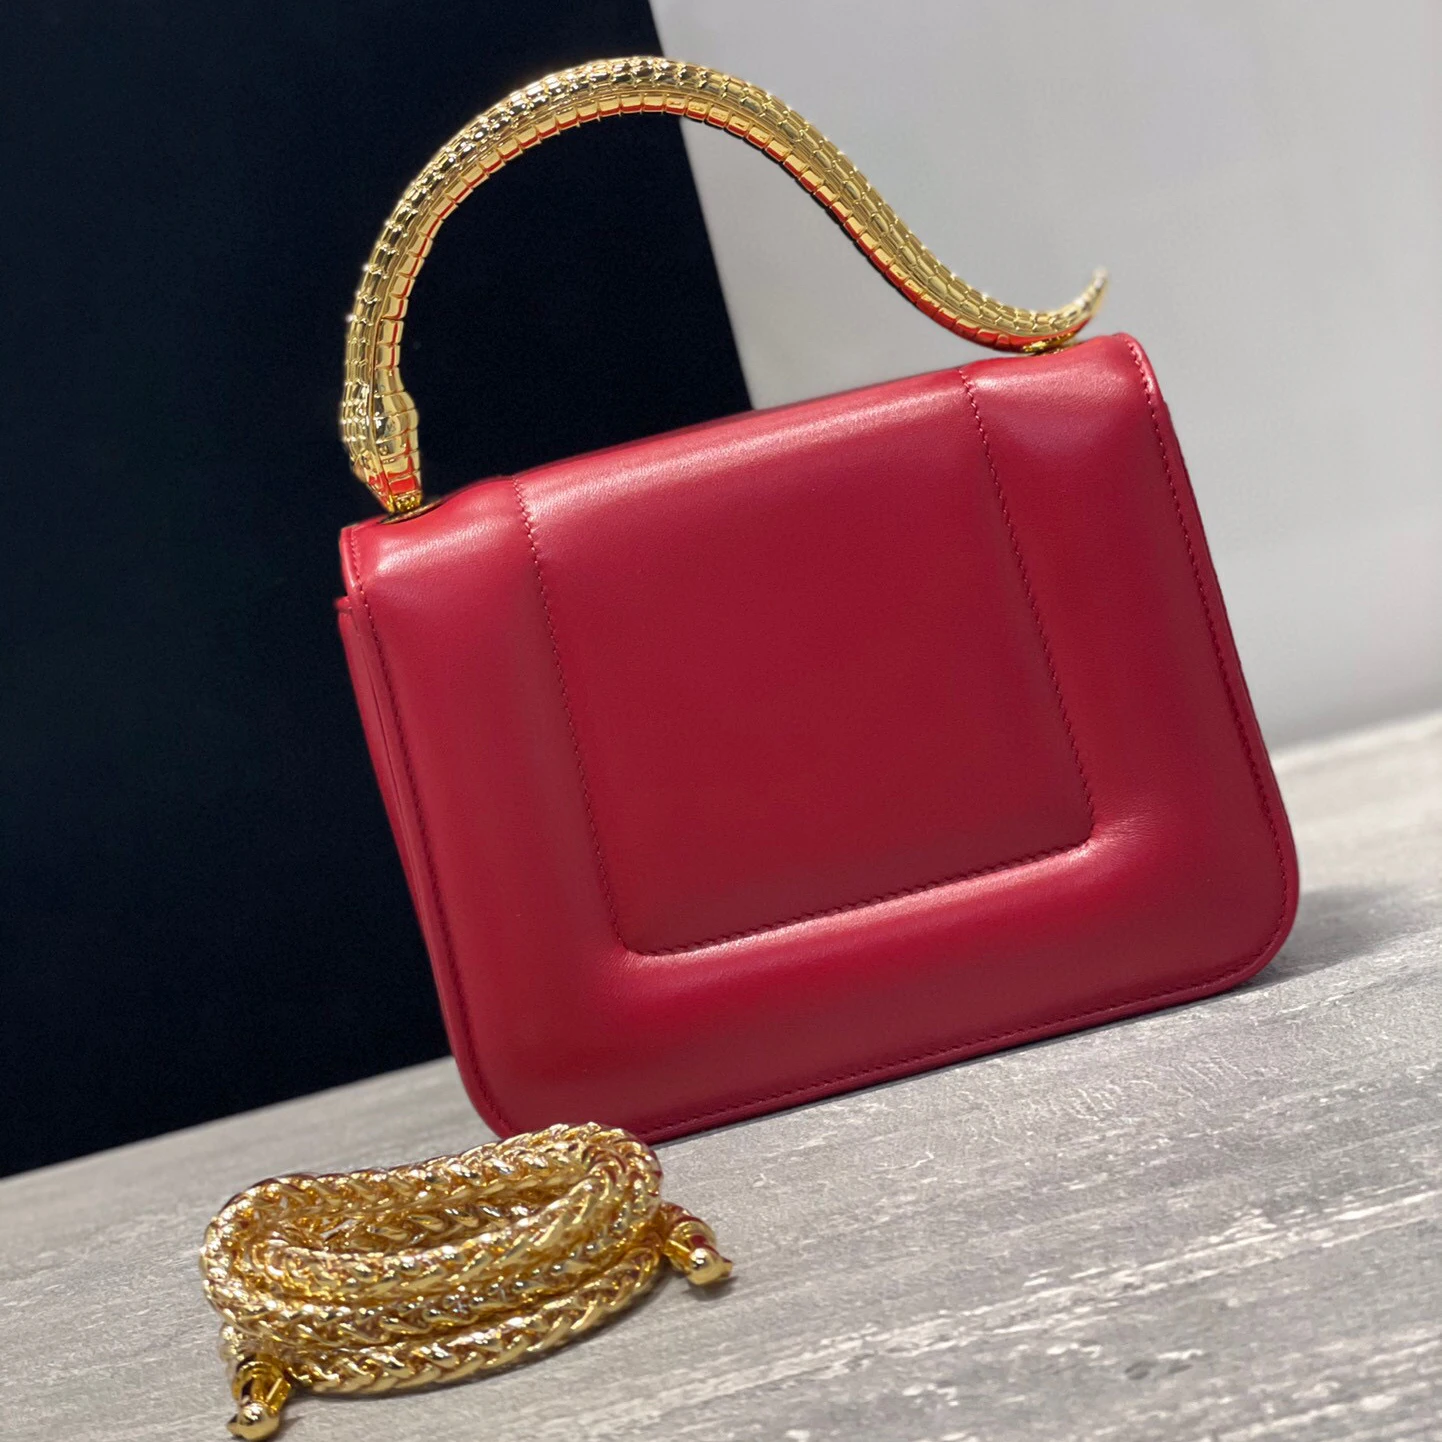 

Новинка 2021, красная кожаная простая женская сумка-мессенджер, дизайн с ручкой в виде змеи, стиль флип, бренд класса люкс